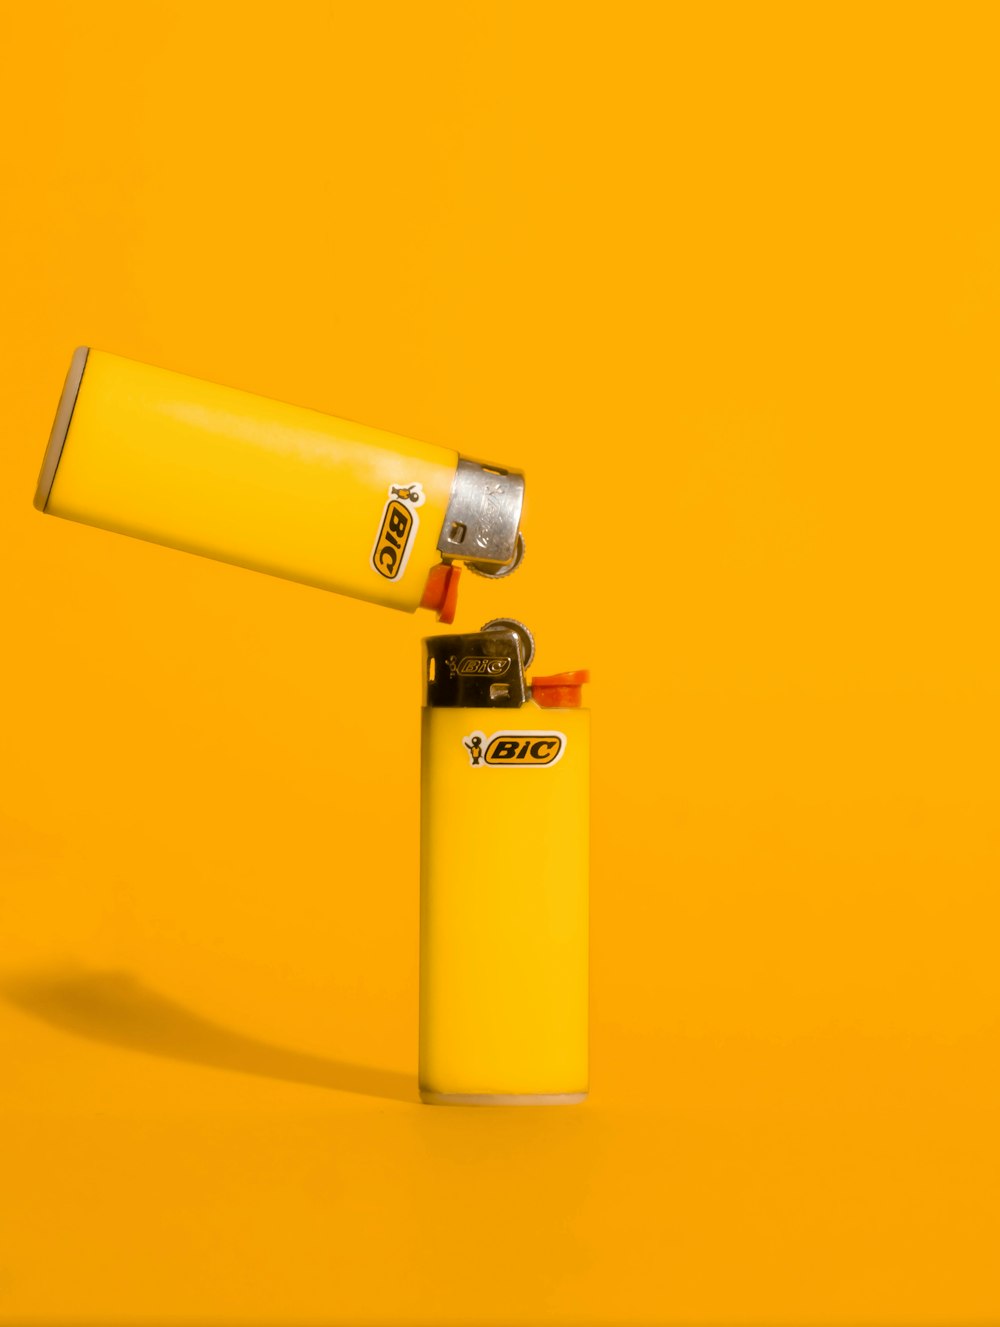 ein gelbes Feuerzeug, das auf einer gelben Oberfläche sitzt